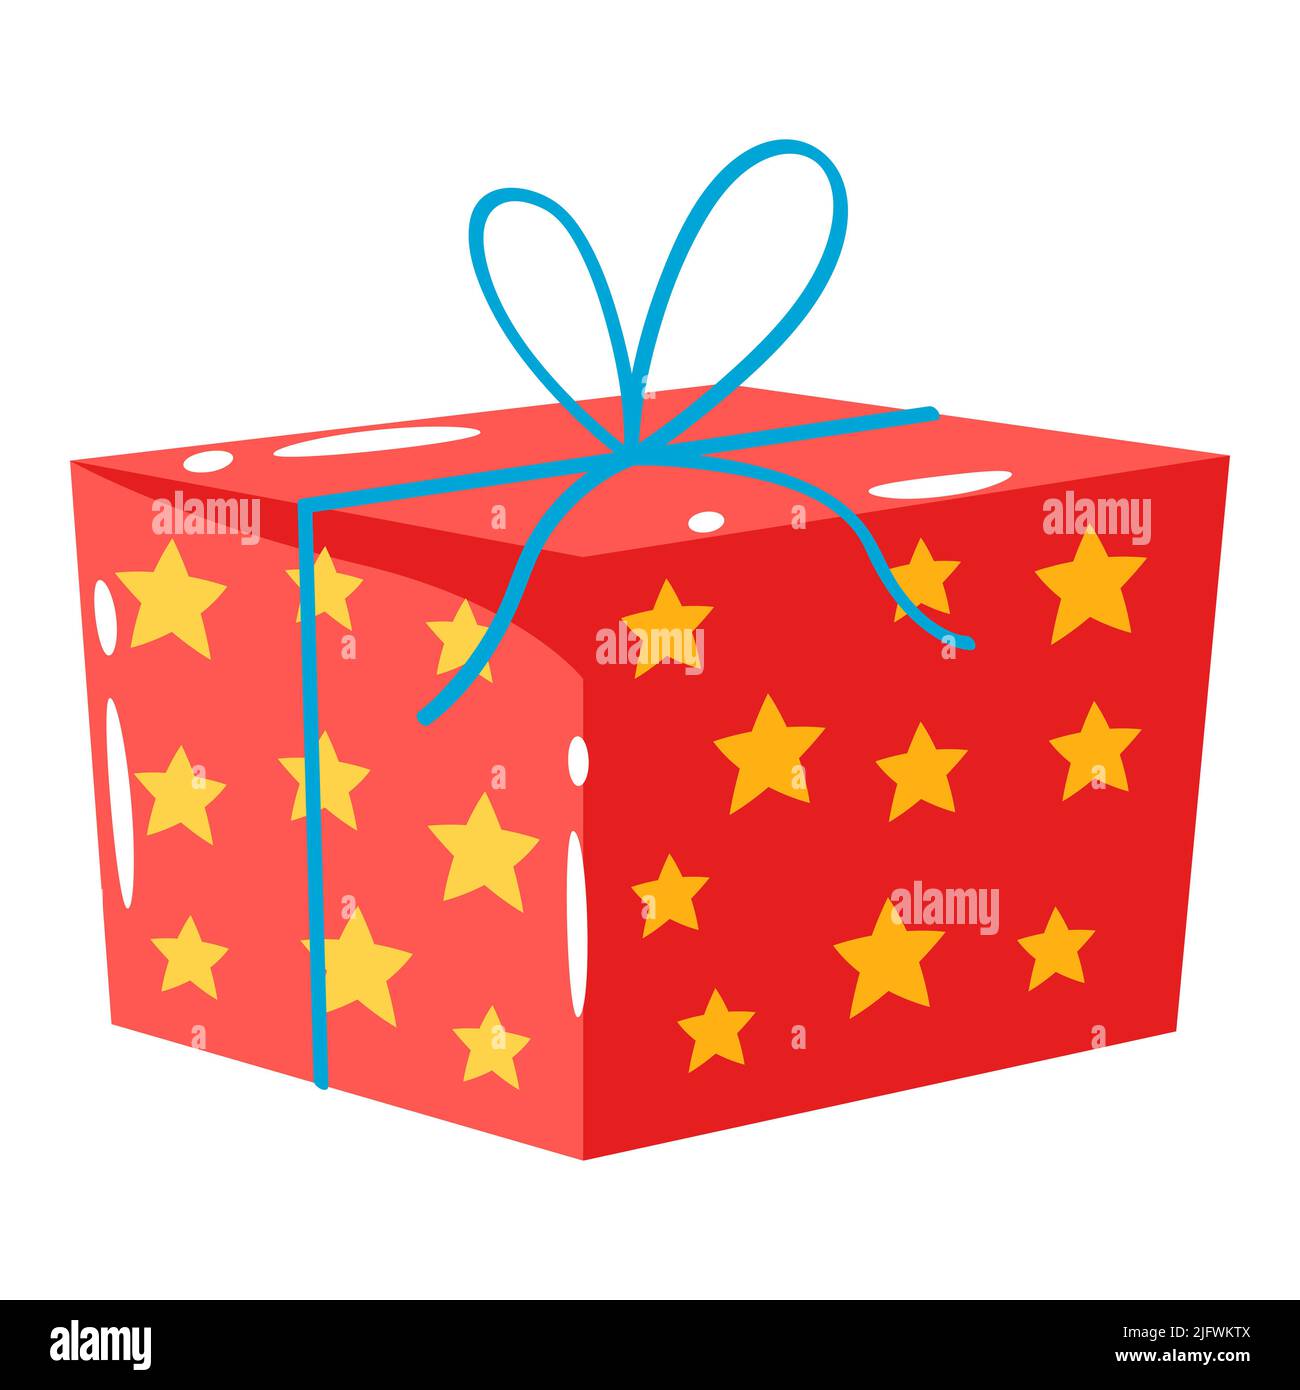 Abbildung der Geschenkschachtel. Farbenfrohes Geschenk für Feiern, Rabatte oder Werbeaktionen. Stock Vektor